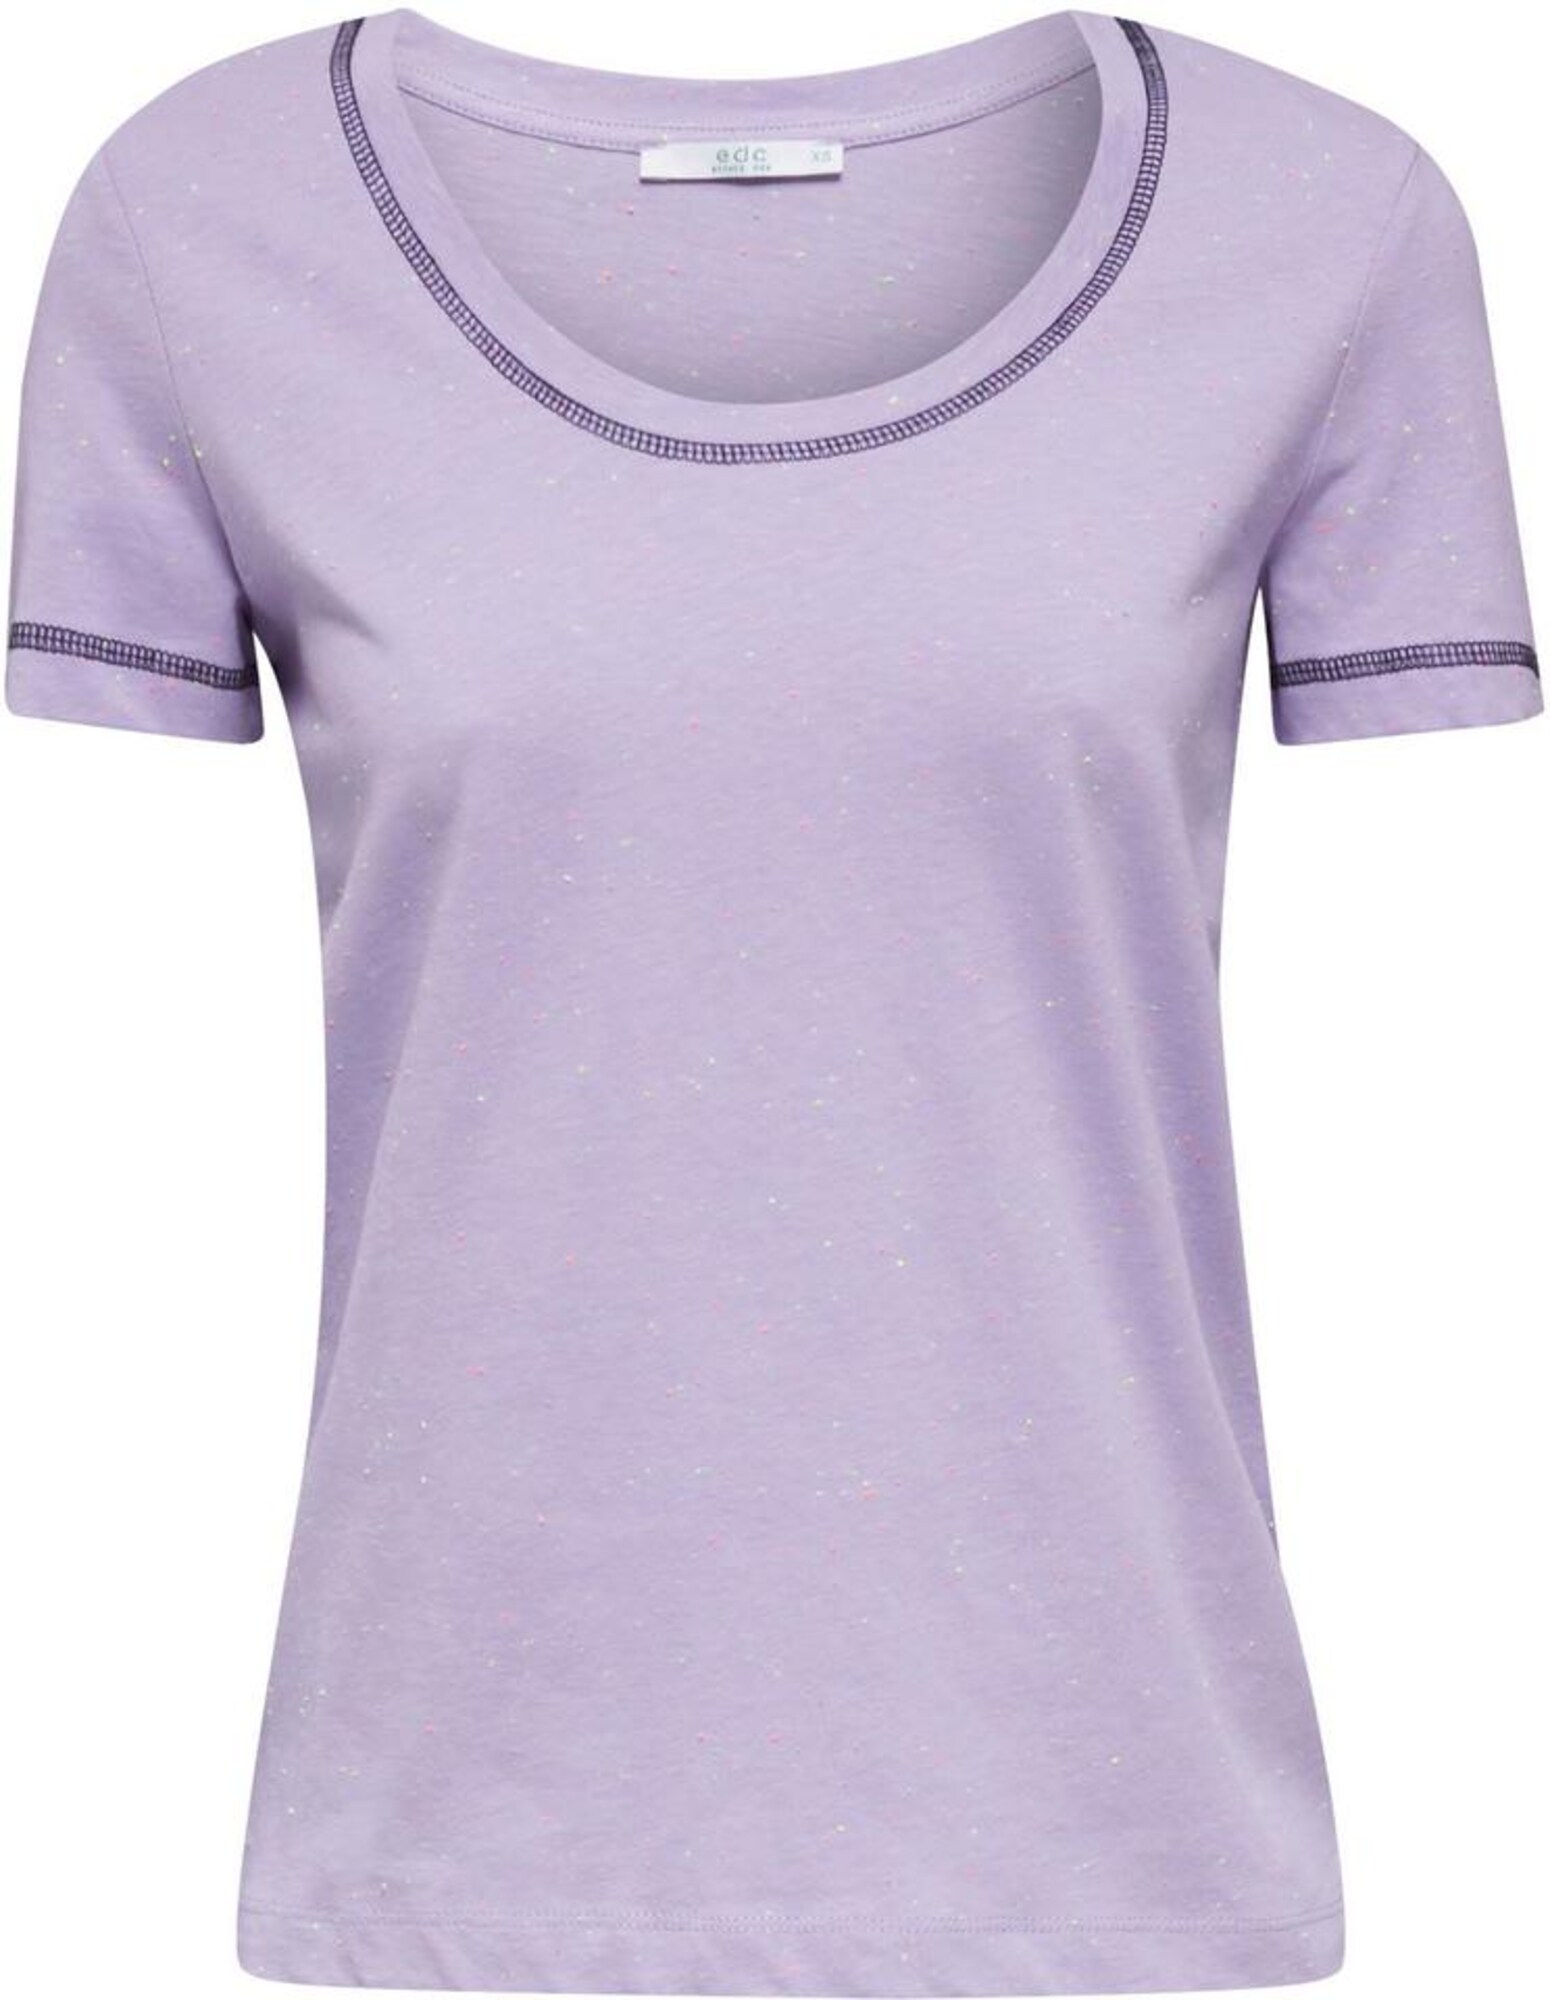 EDC BY ESPRIT Marškinėliai  mišrios spalvos / šviesiai violetinė / purpurinė